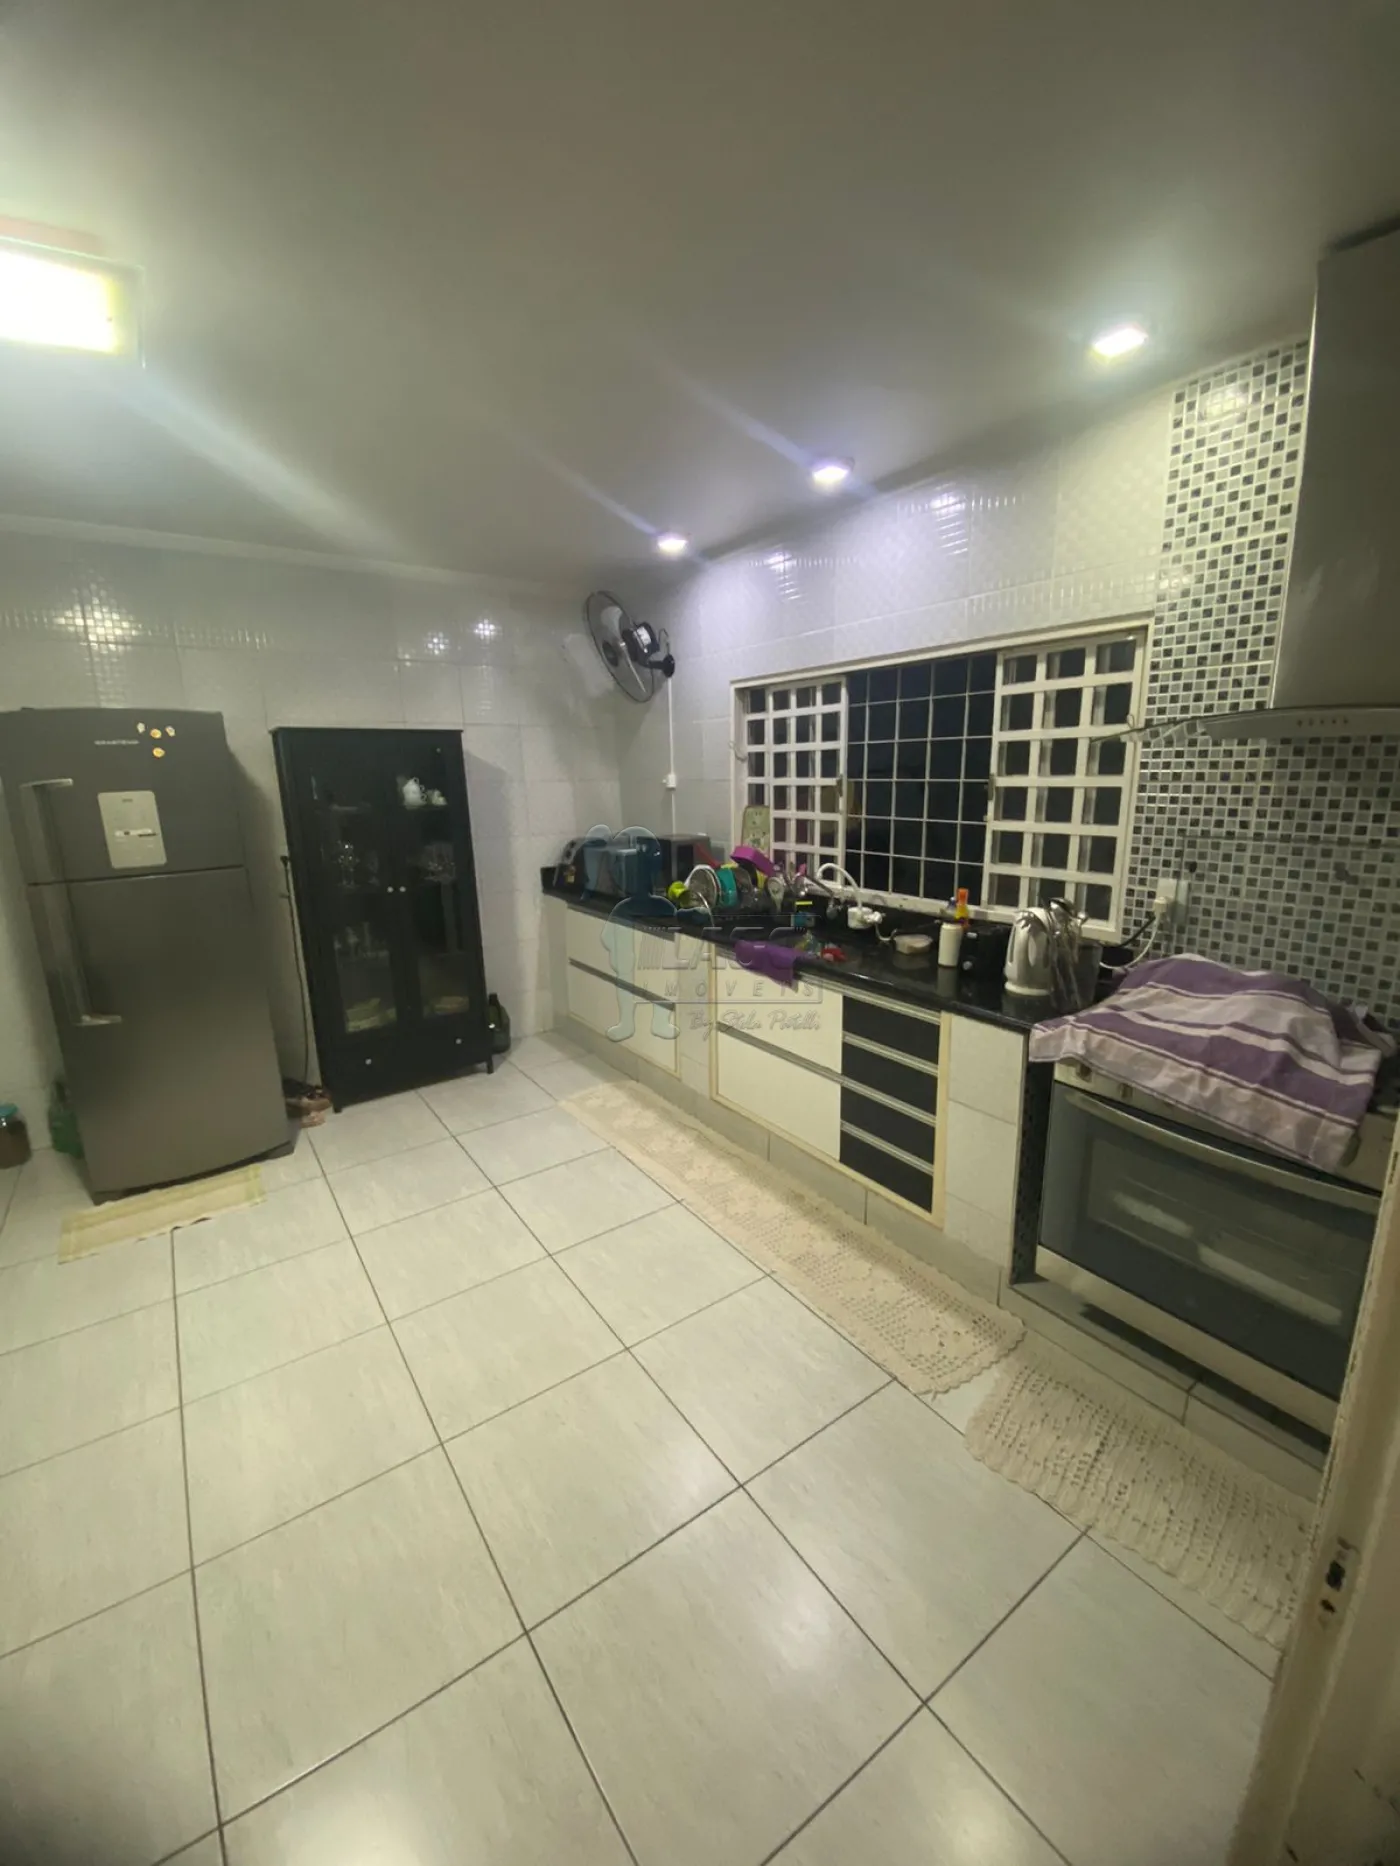 Comprar Casa / Padrão em Ribeirão Preto R$ 360.000,00 - Foto 3